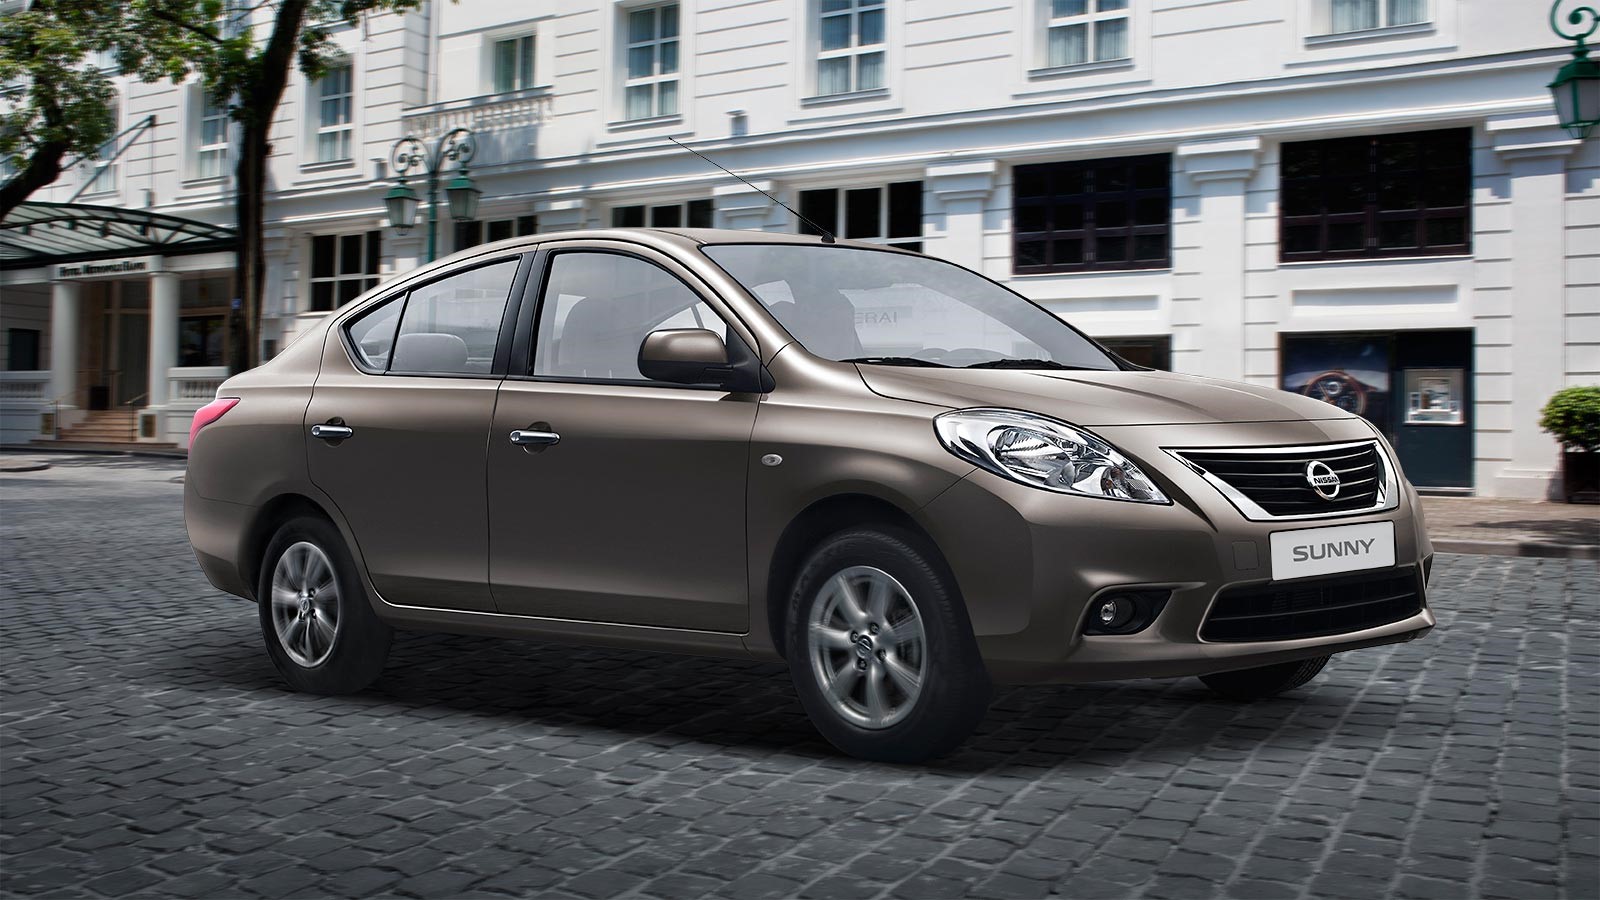 Nissan Sunny - Chất lượng đến từ giá trị sử dụng và sự an toàn